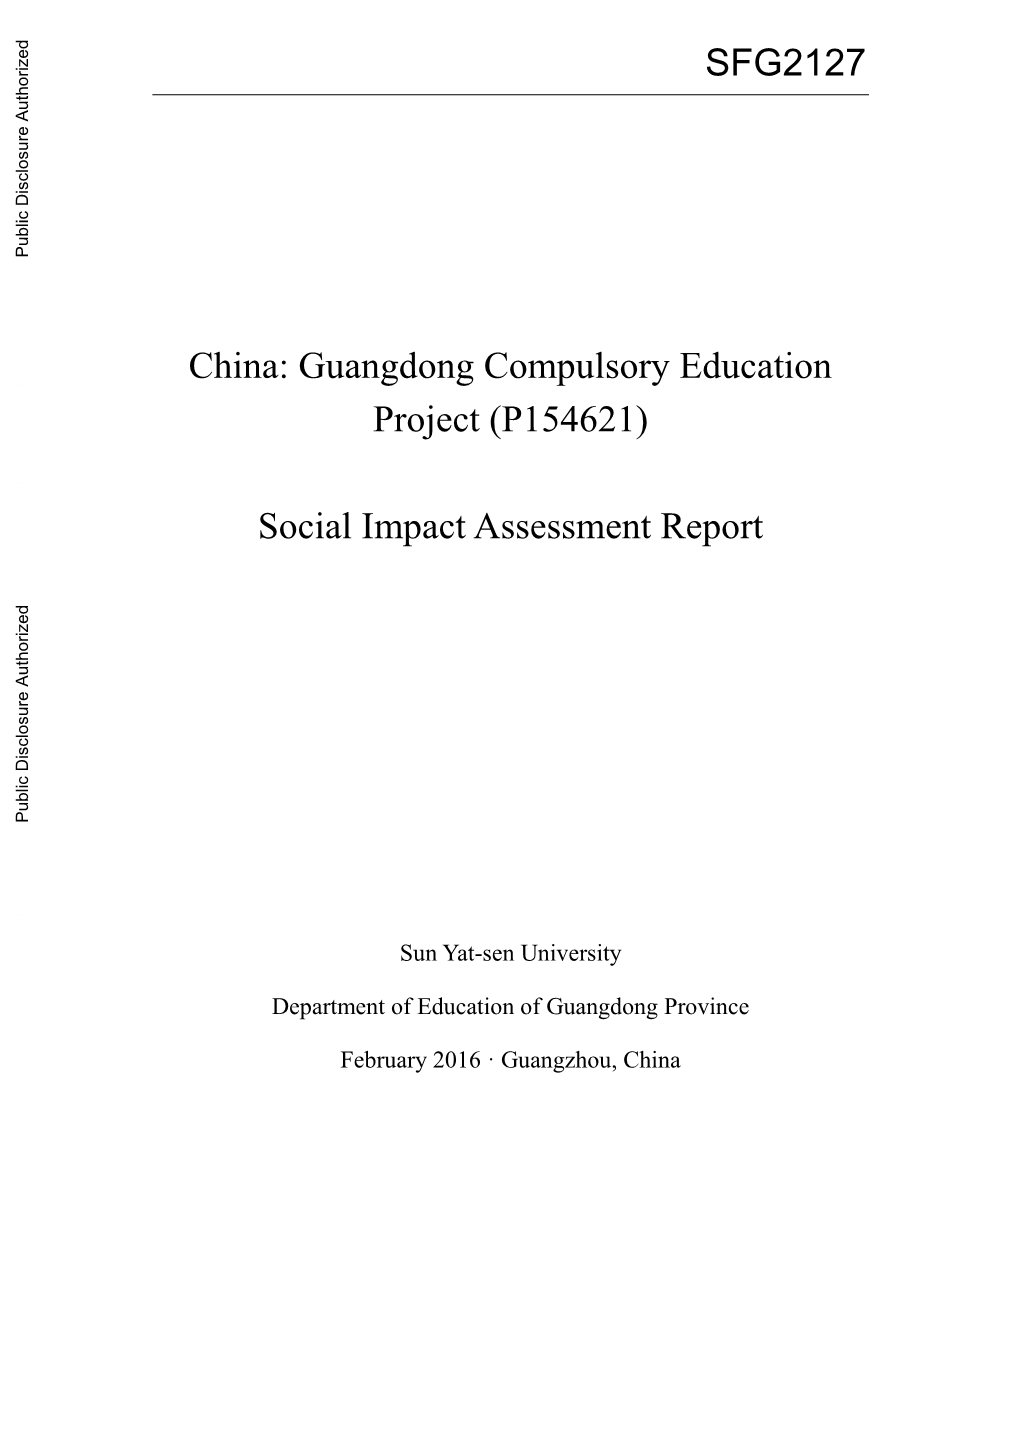 Social Impact Assessment Report Public Disclosure Authorized